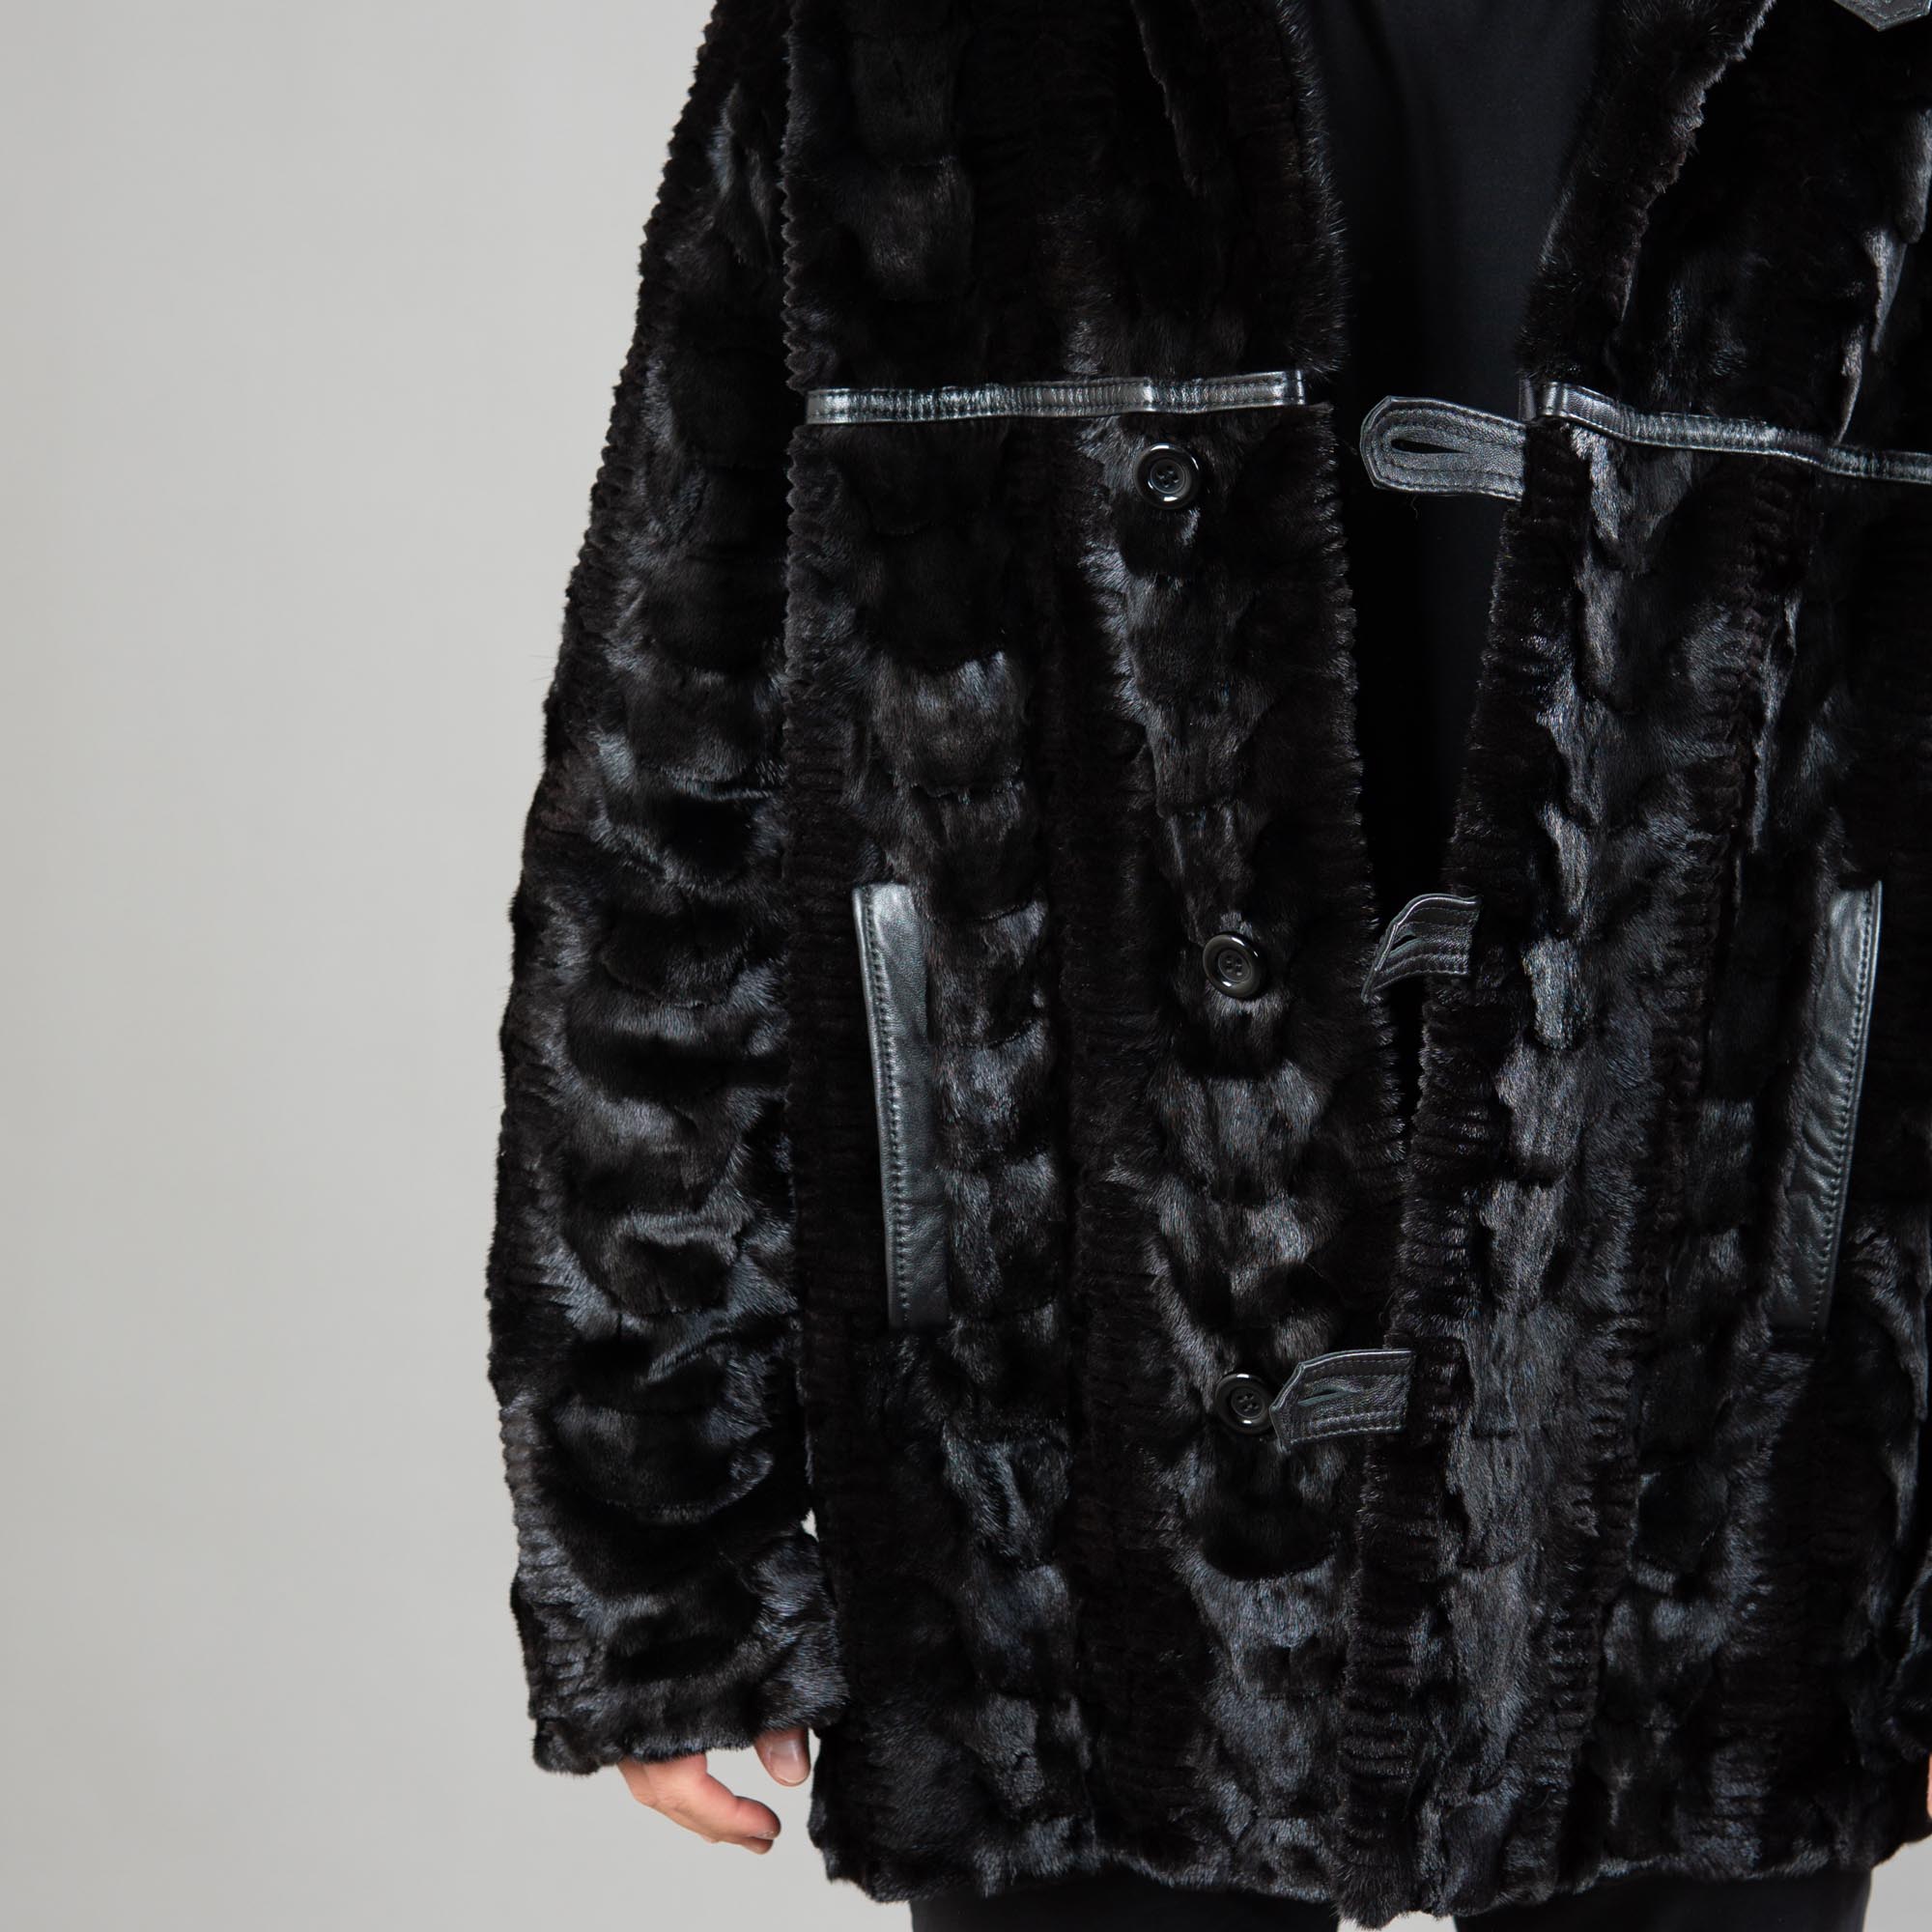 Mink fur jacket with leather details in black color